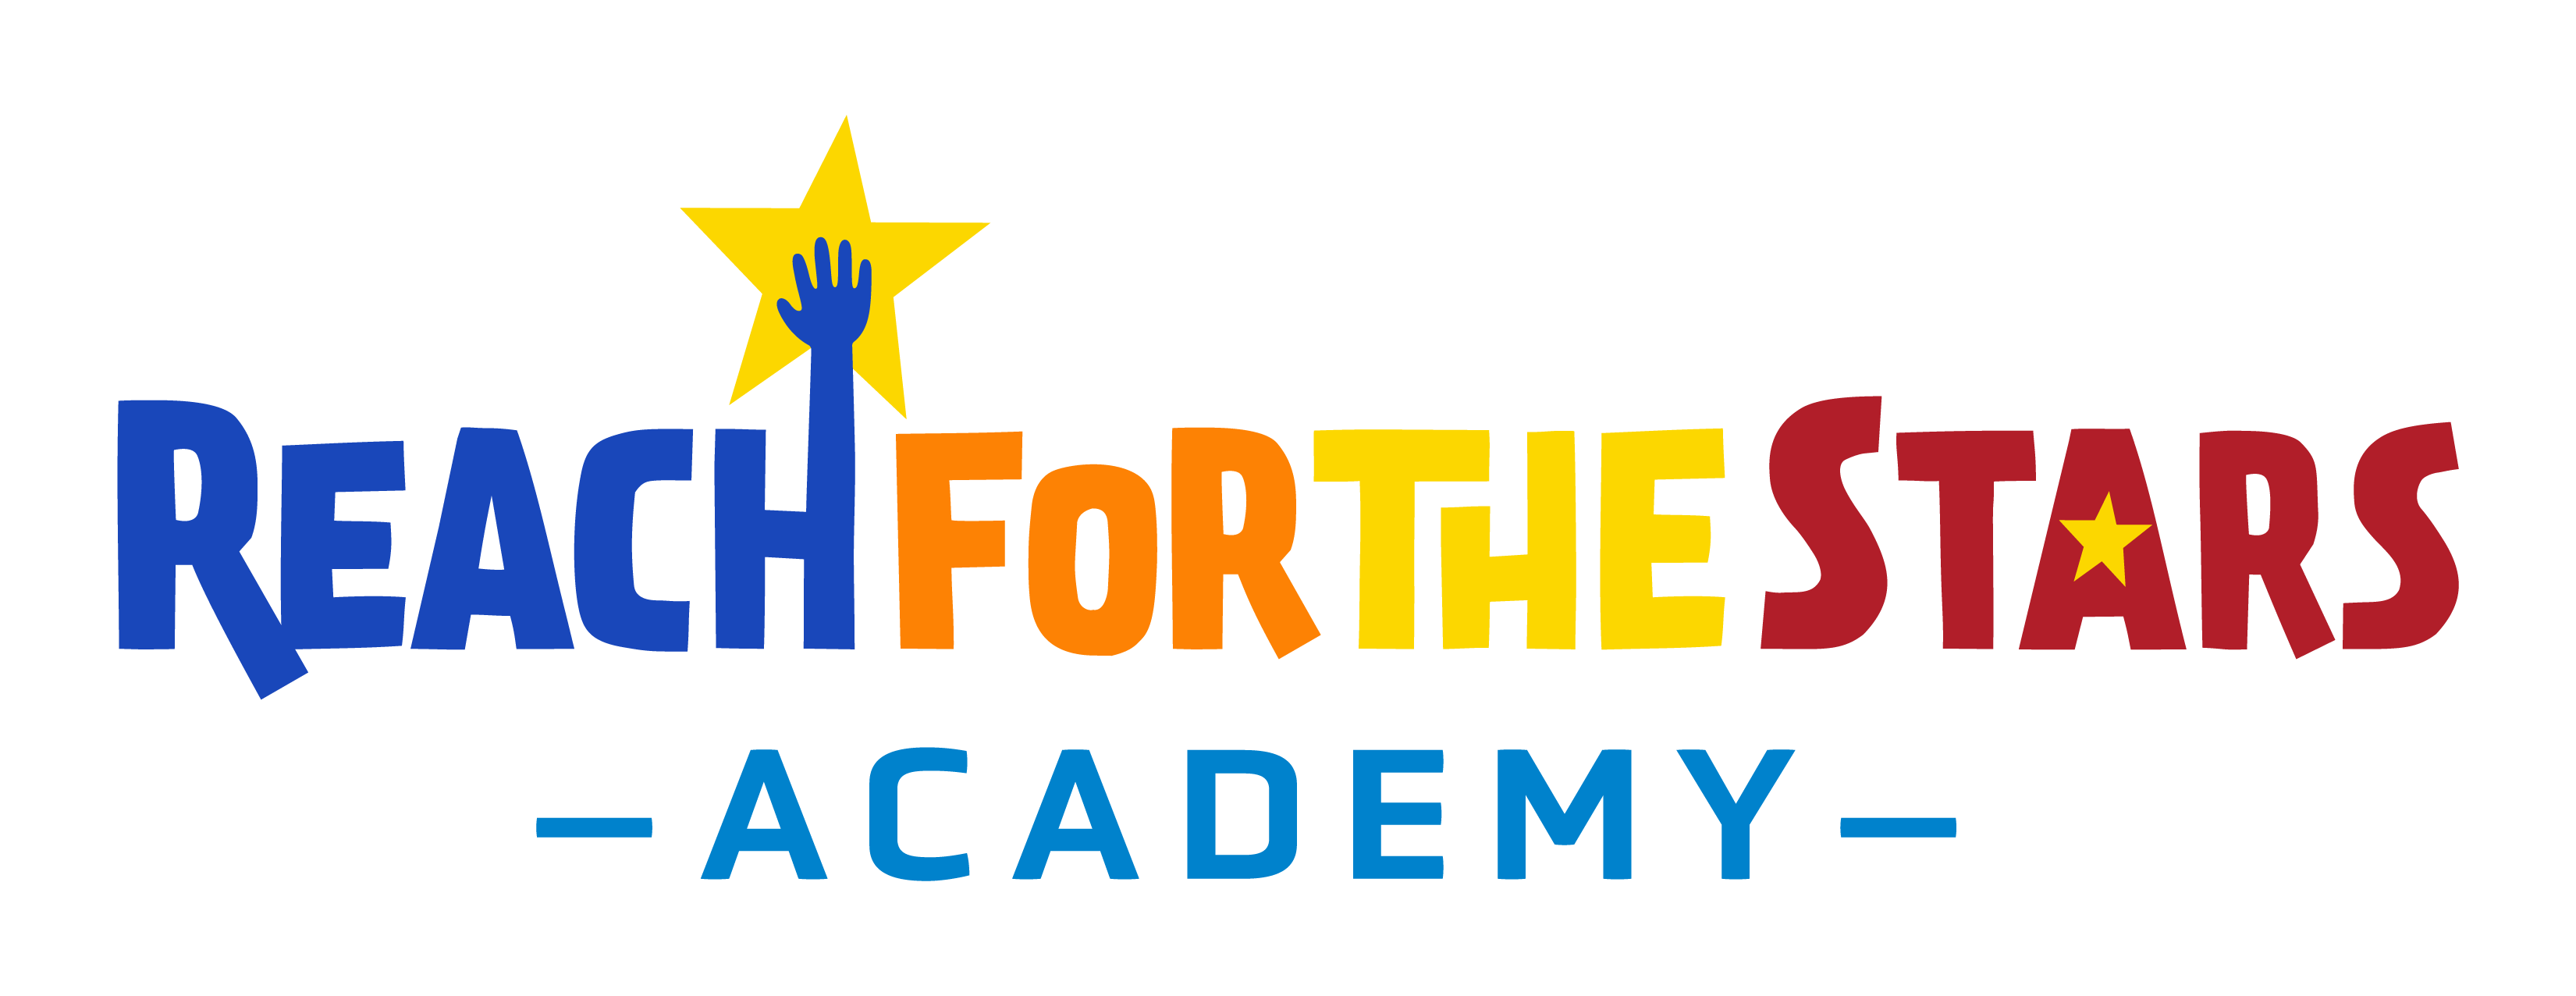 Reach For The Stars Academy